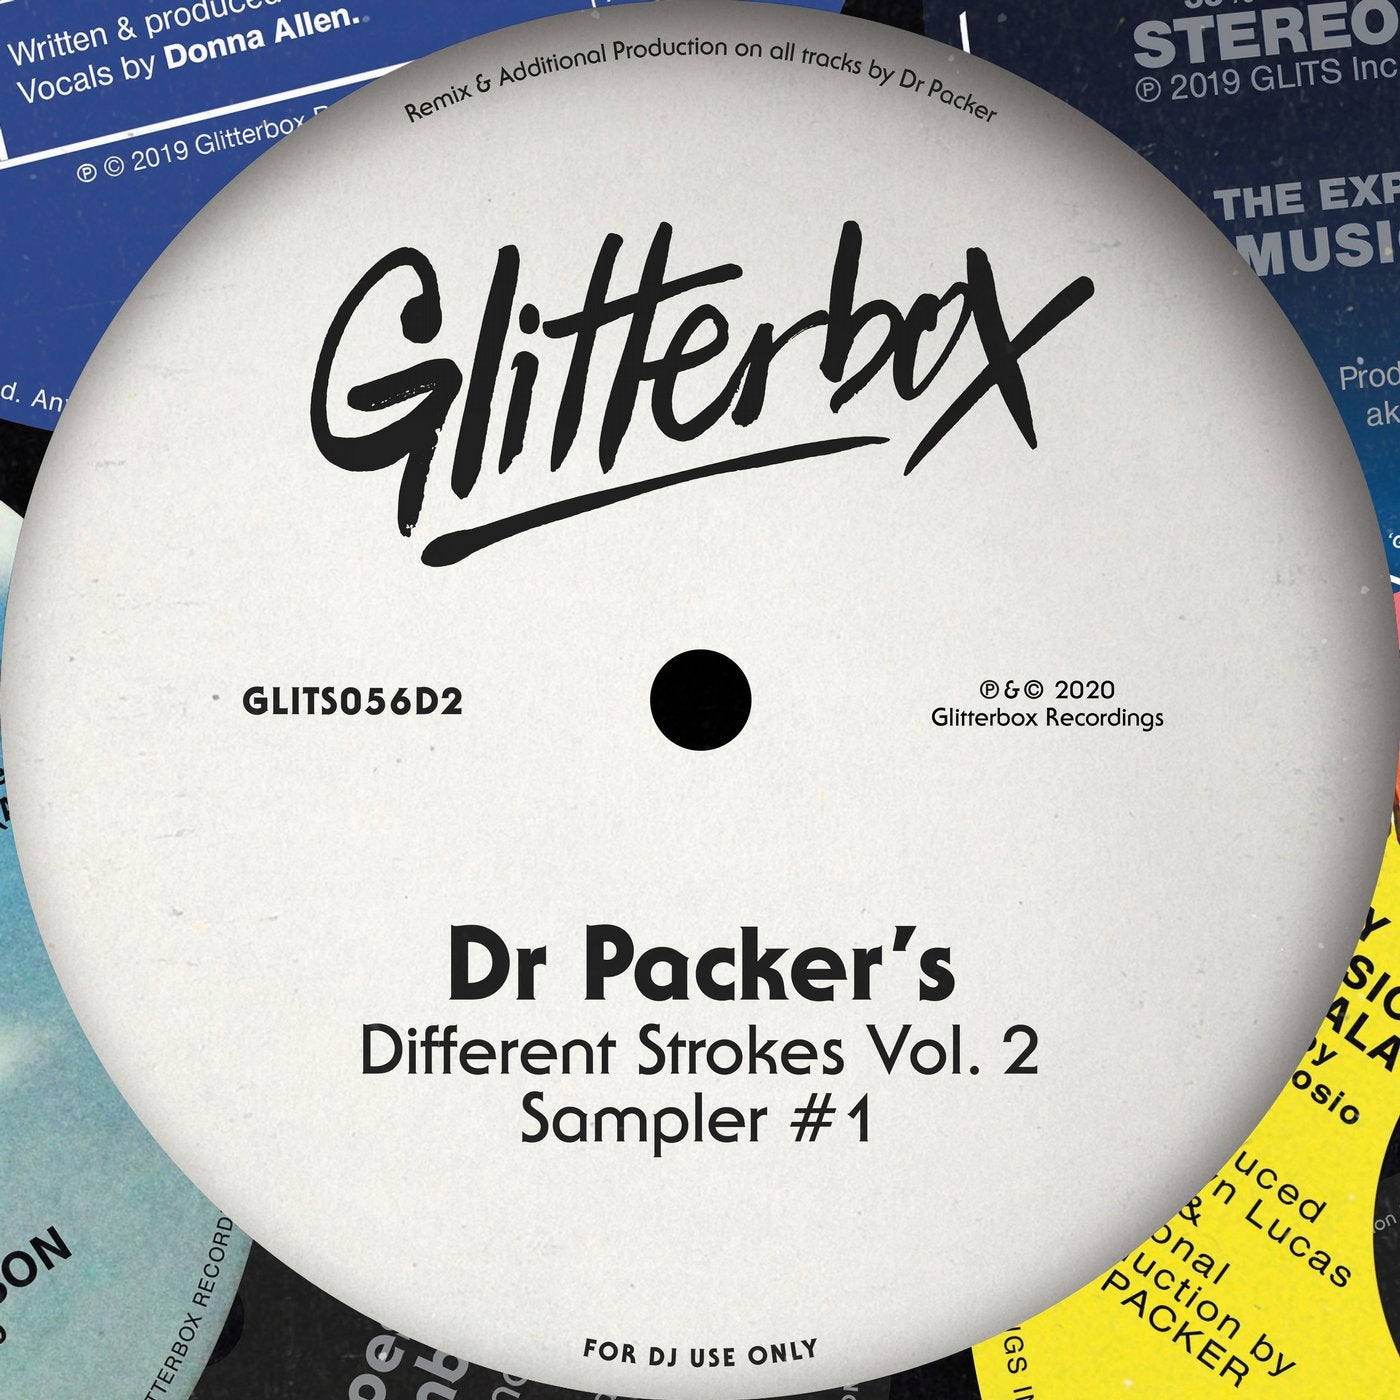 Dr Packer's Different Strokes Volume 2 Sampler #1